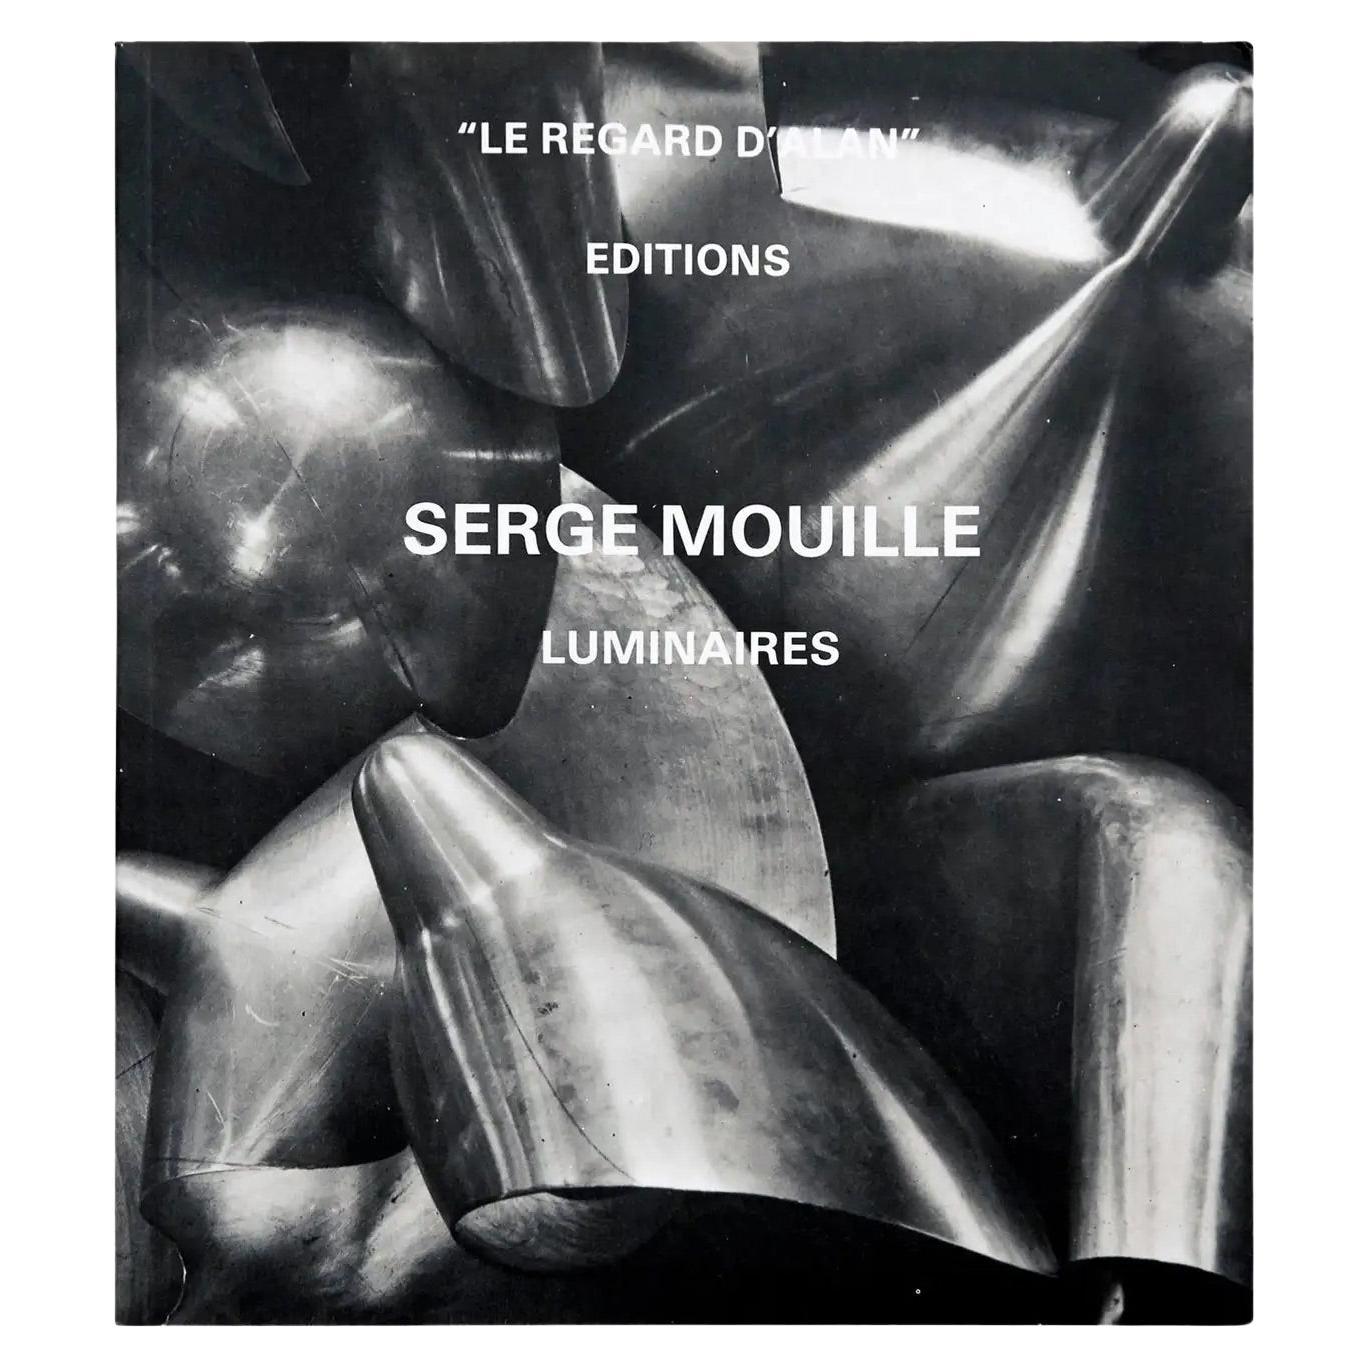 Serge Mouille Luminaires Book "Le Regard D'alan" For Sale